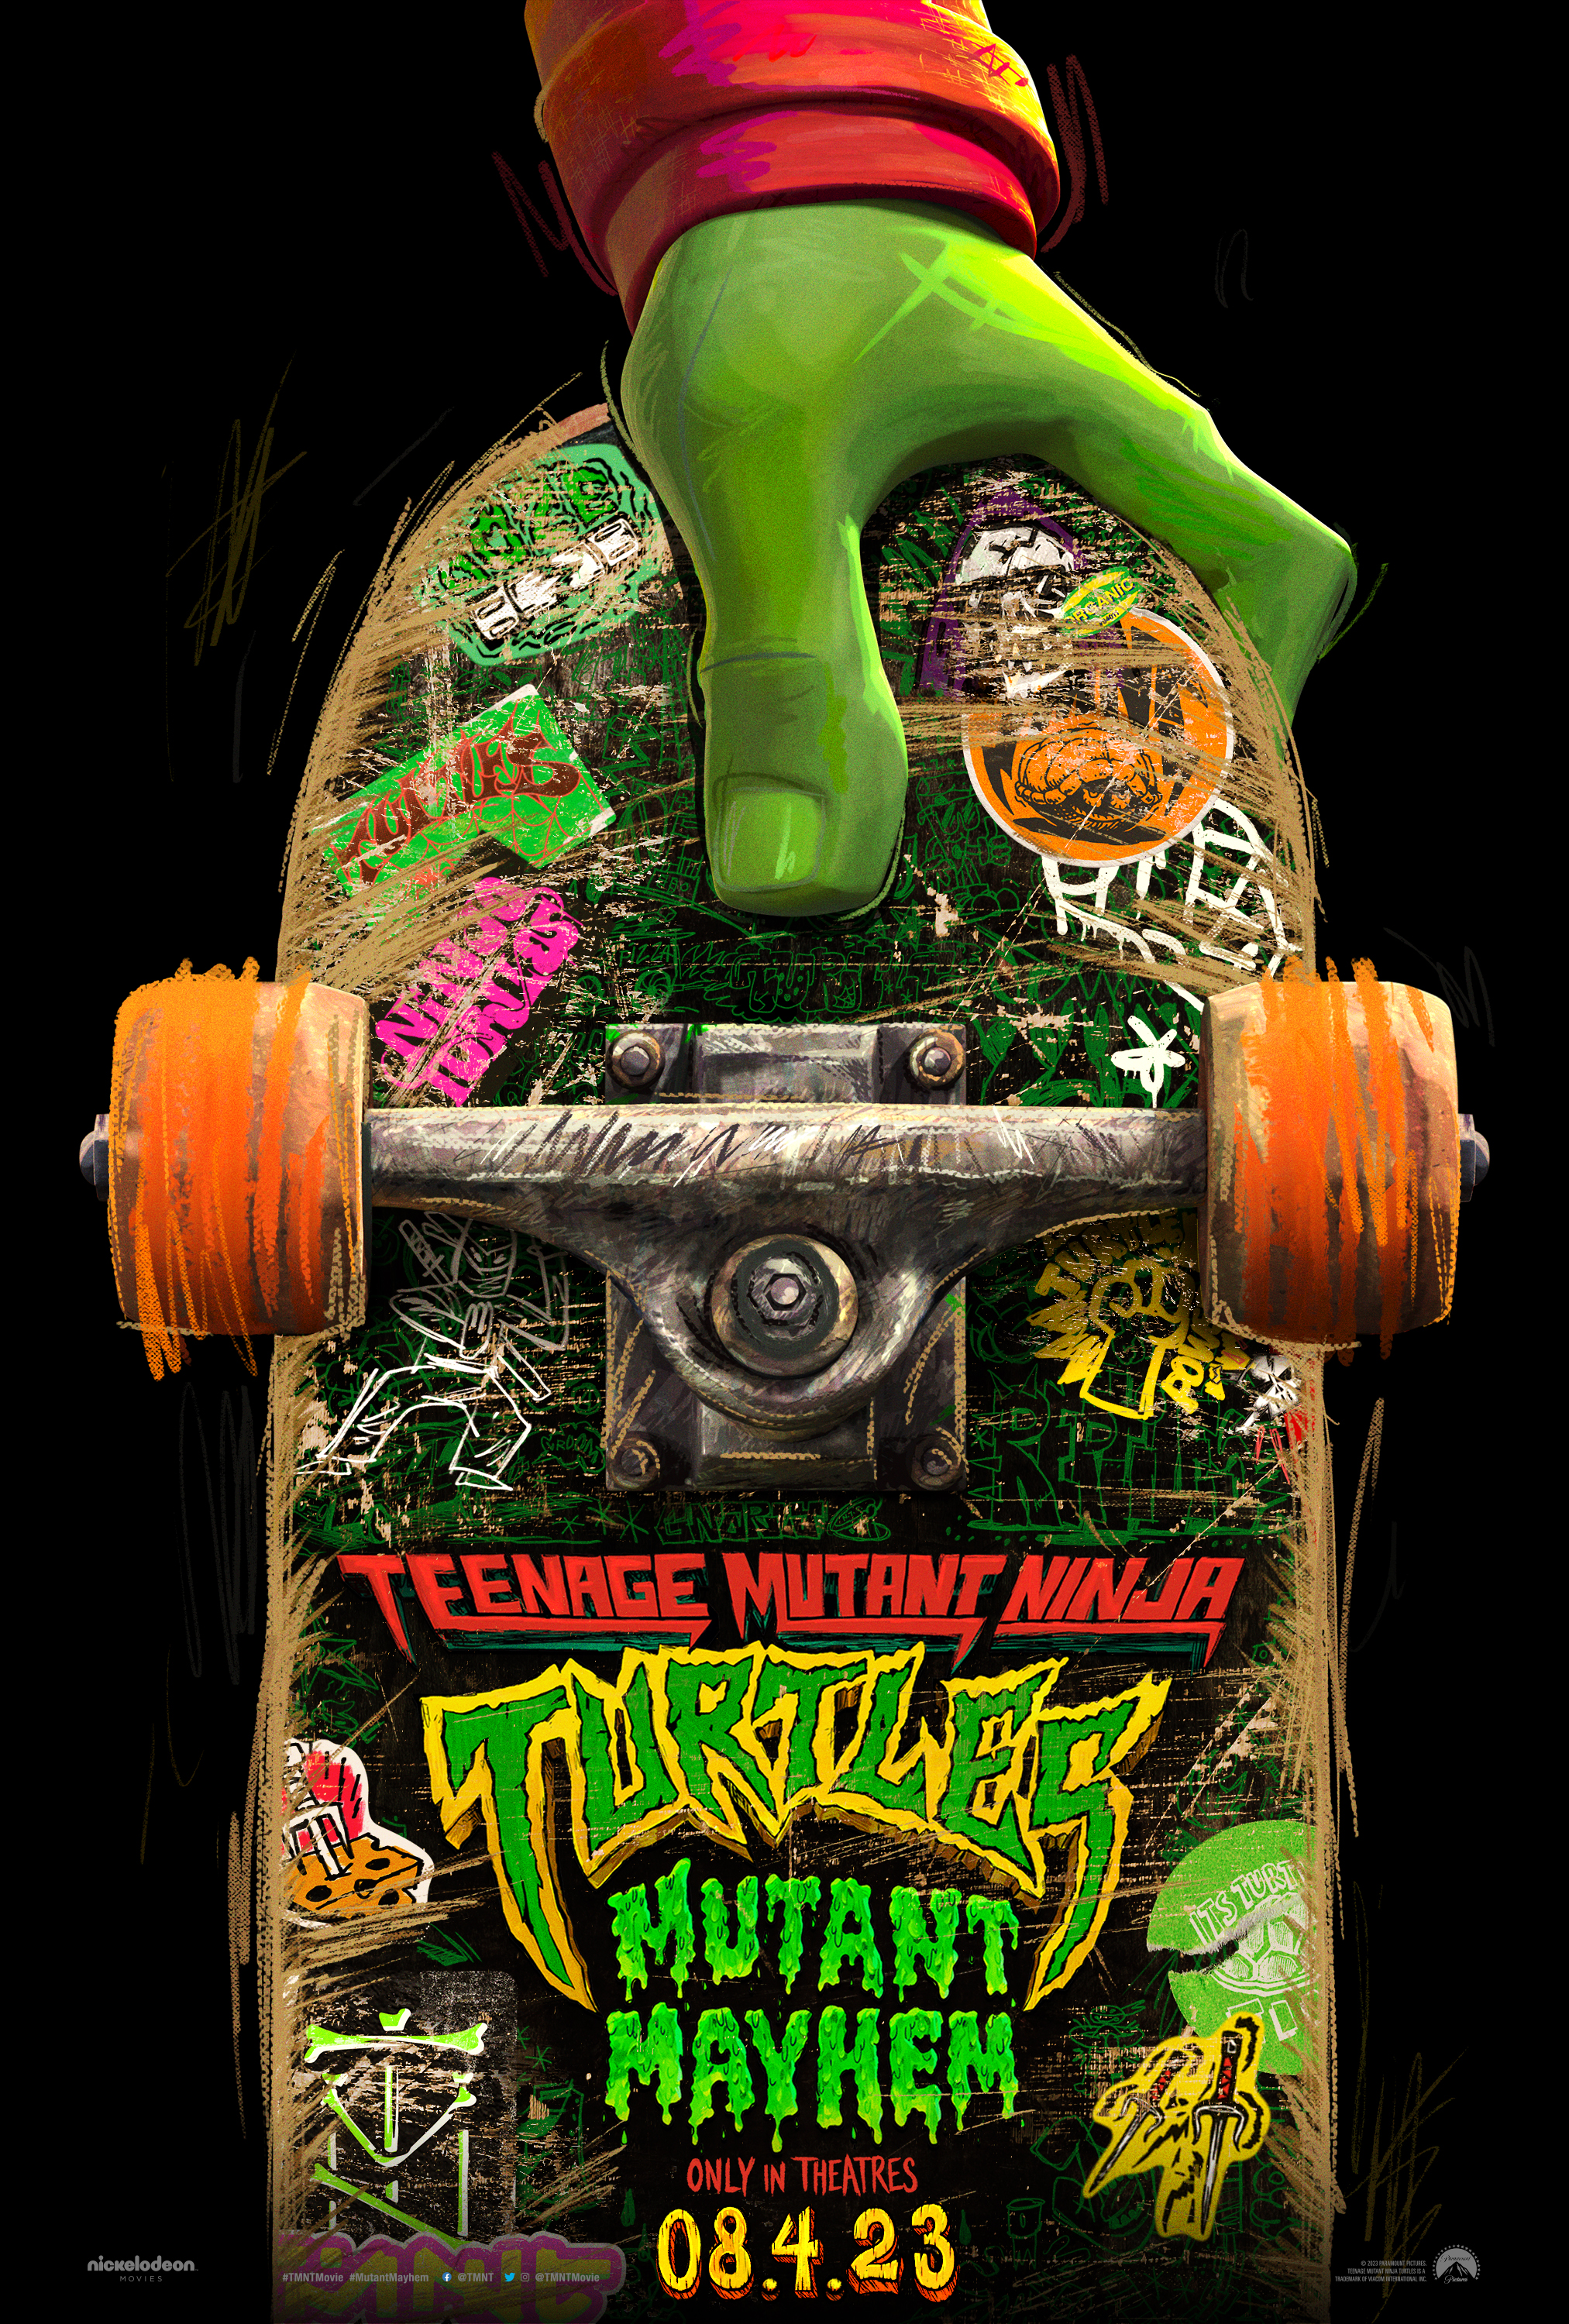 Teenage Mutant Ninja Turtles: Mutant Mayhem trailer, cast, where